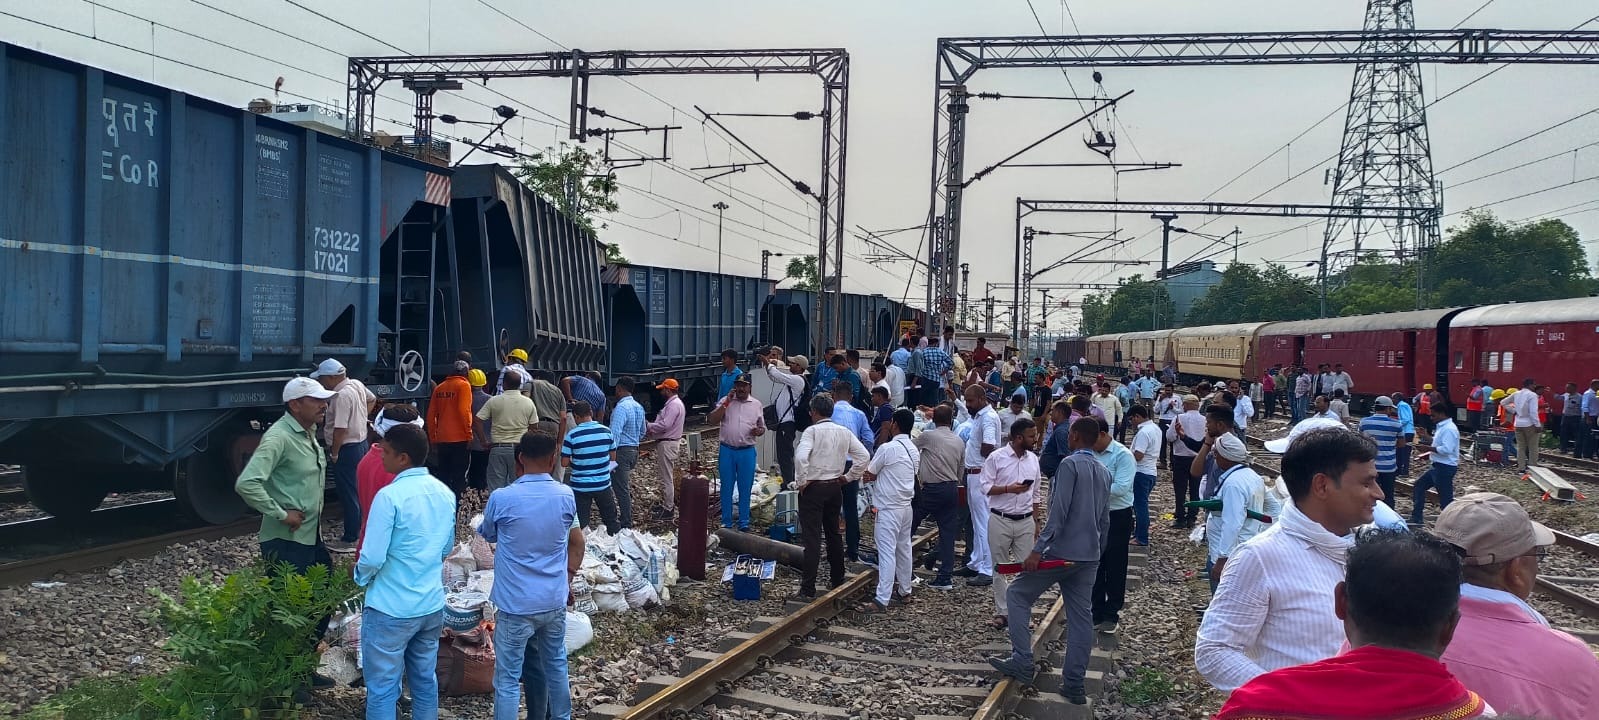 Prayagraj News: प्रयागराज में ट्रैक से उतरी मालगाड़ी, कई ट्रेनें हुईं प्रभावित